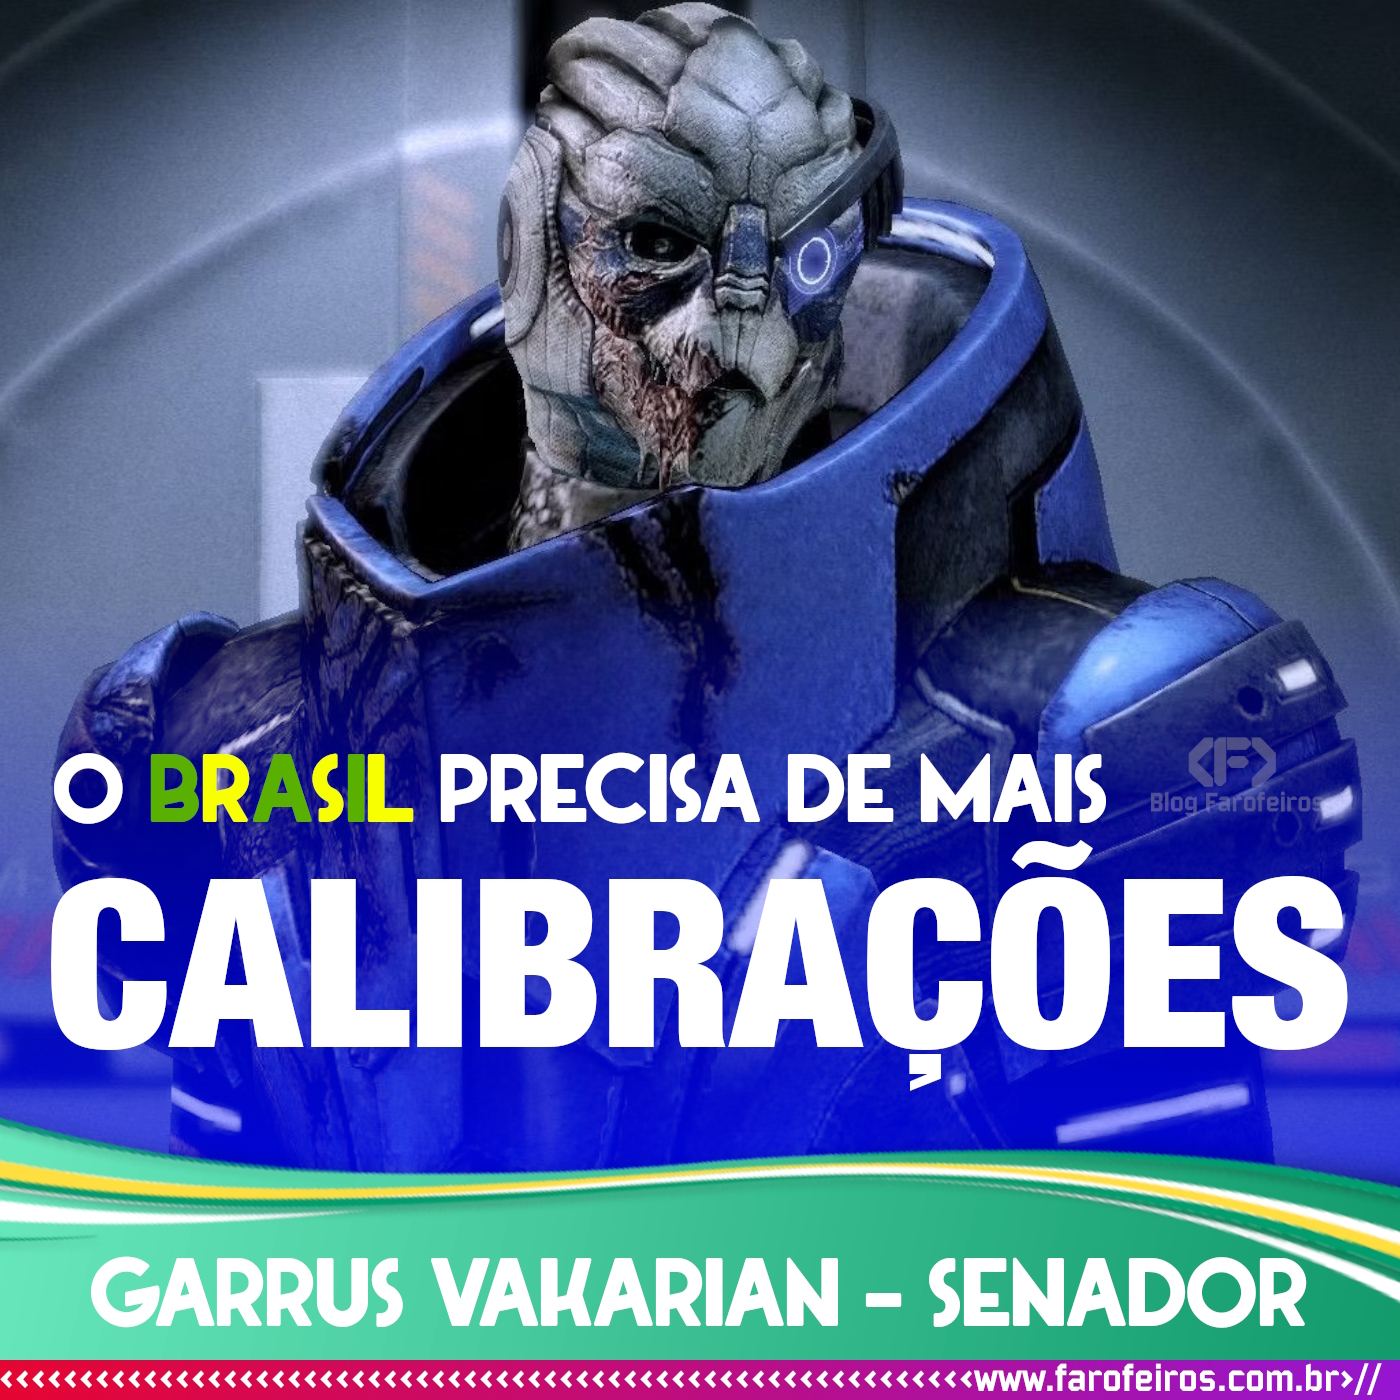 Garrus Vakarian, alienígena de Mass Effect, olhando para o além. Em letras brancas se lê "O B R A S I L precisa de mais CALIBRAÇÕES". E abaixo, no fundo ver com efeitos amarelos na borda "Garrus Vakarian - Senador" - Super Eleições 2022 - Blog Farofeiros